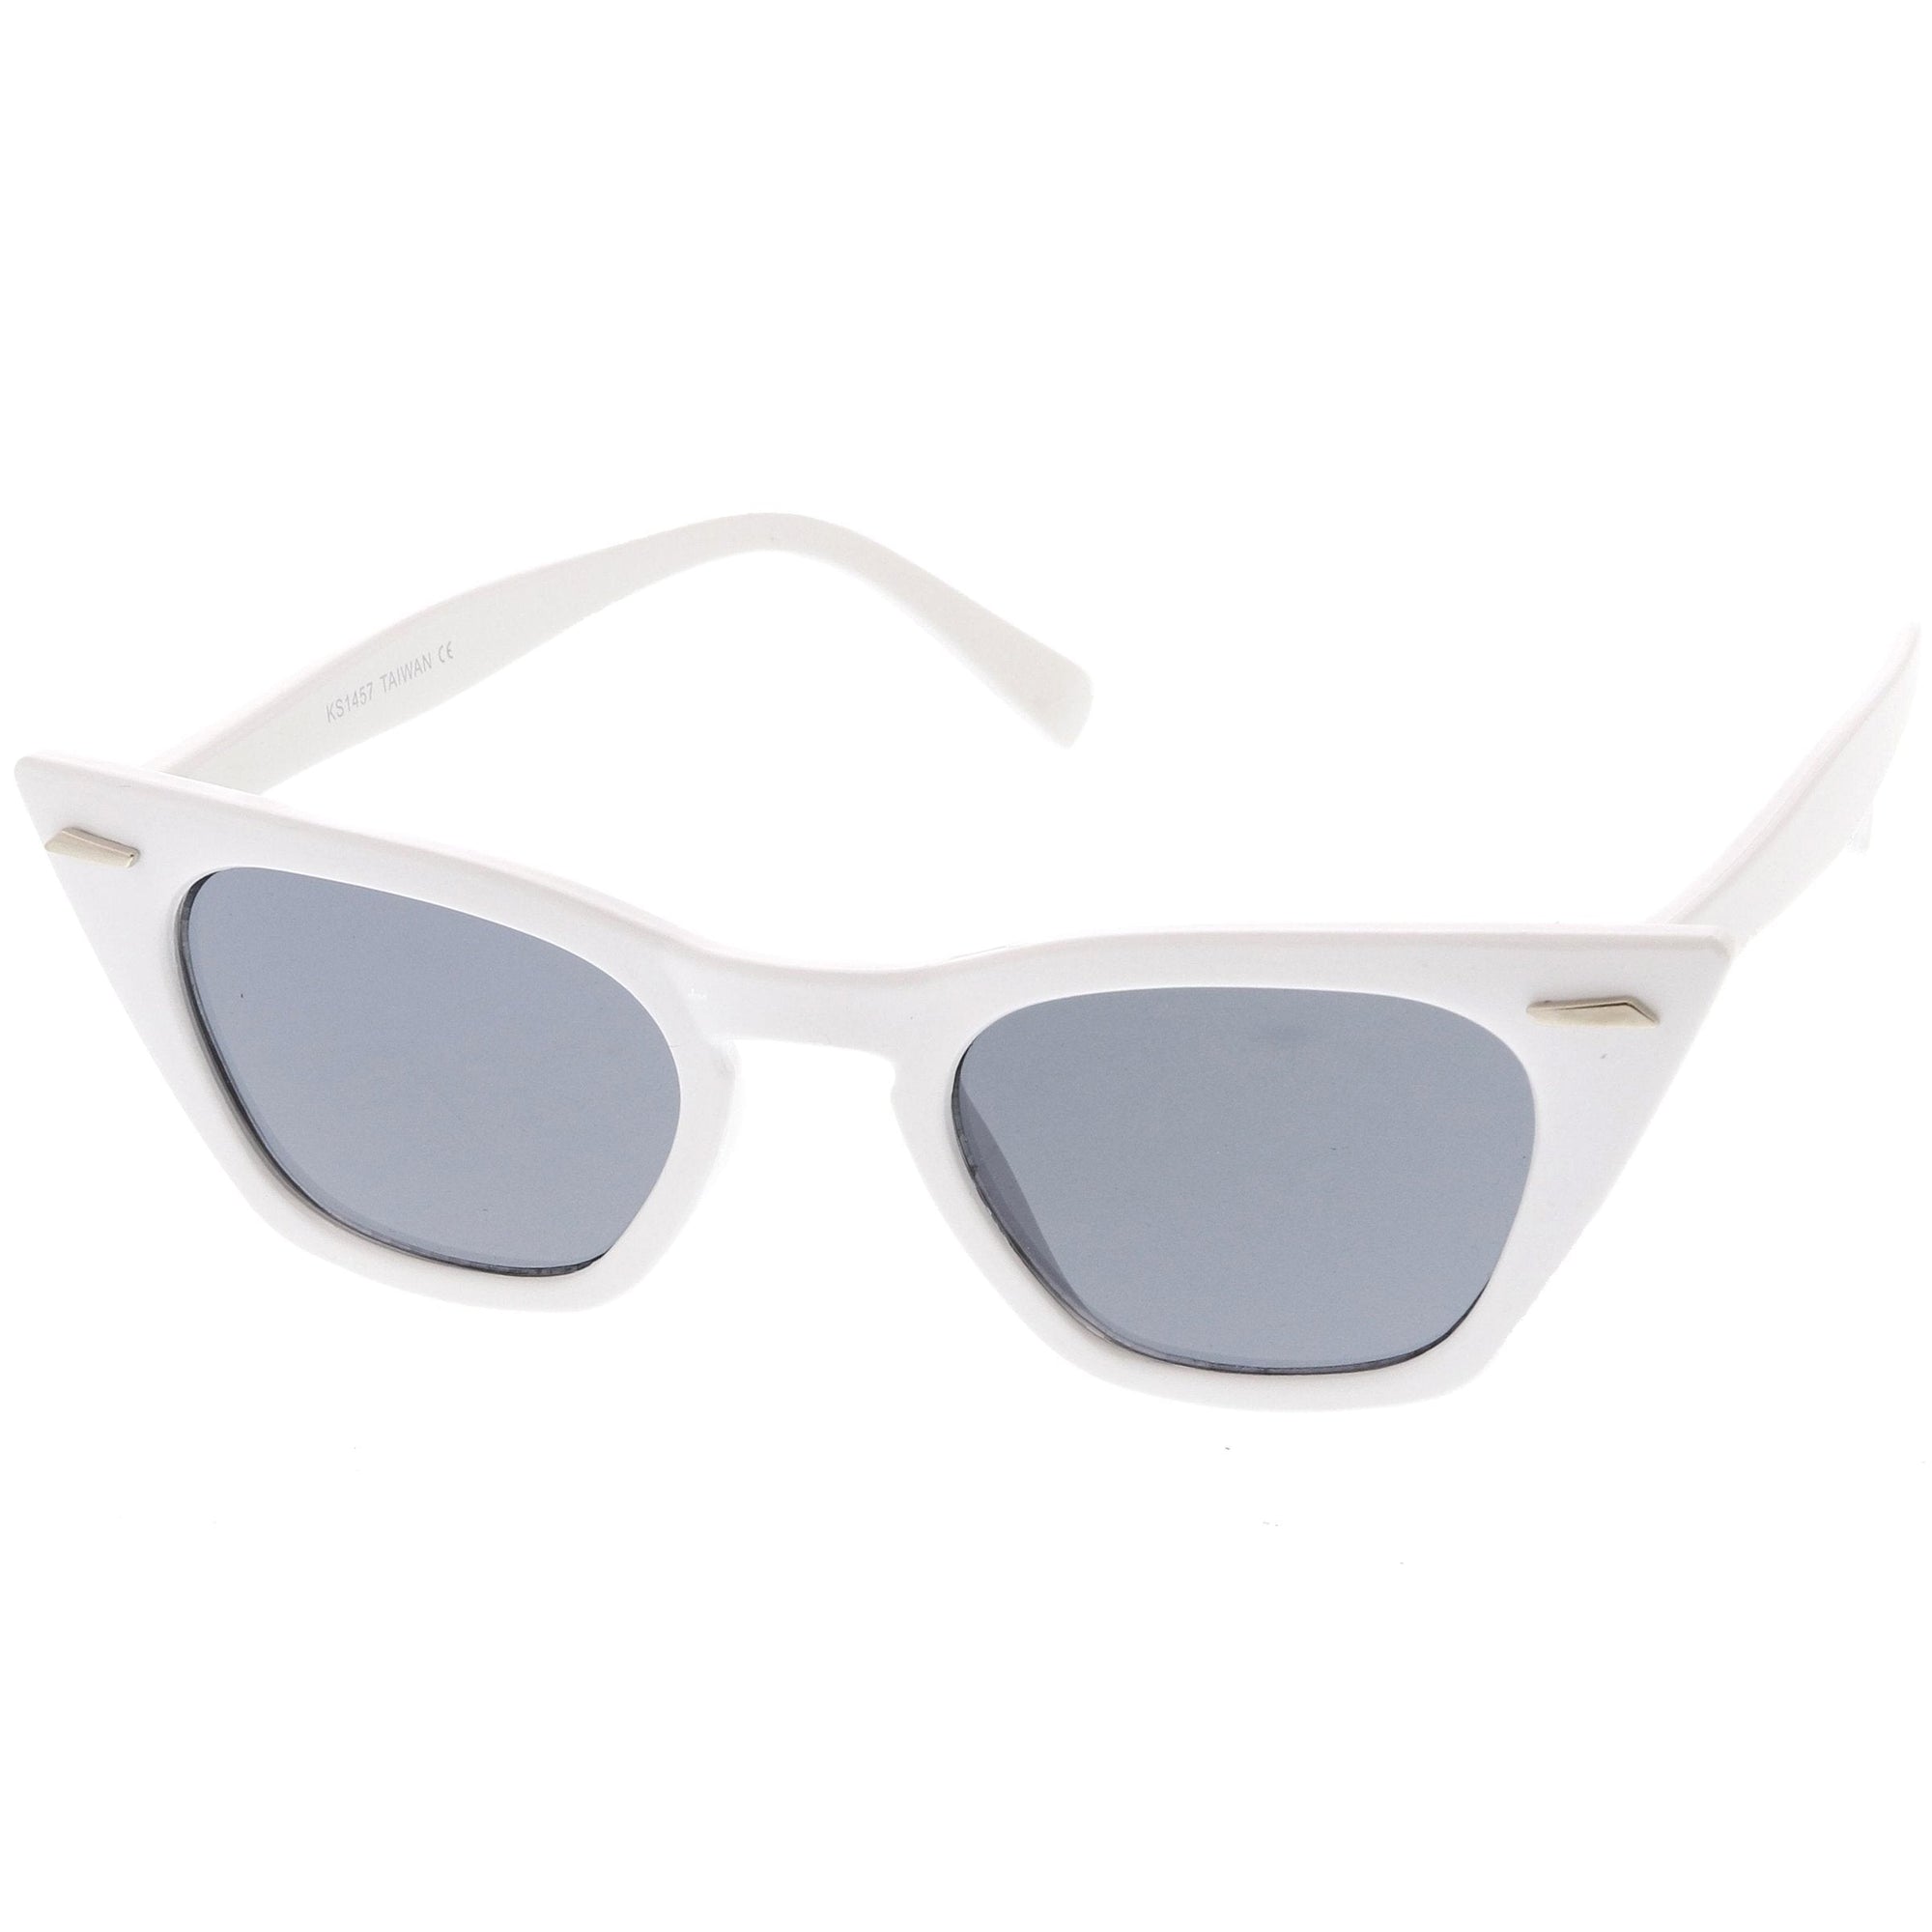 Gafas de sol retro estilo ojo de gato con punta plana y punta afilada para mujer 8683